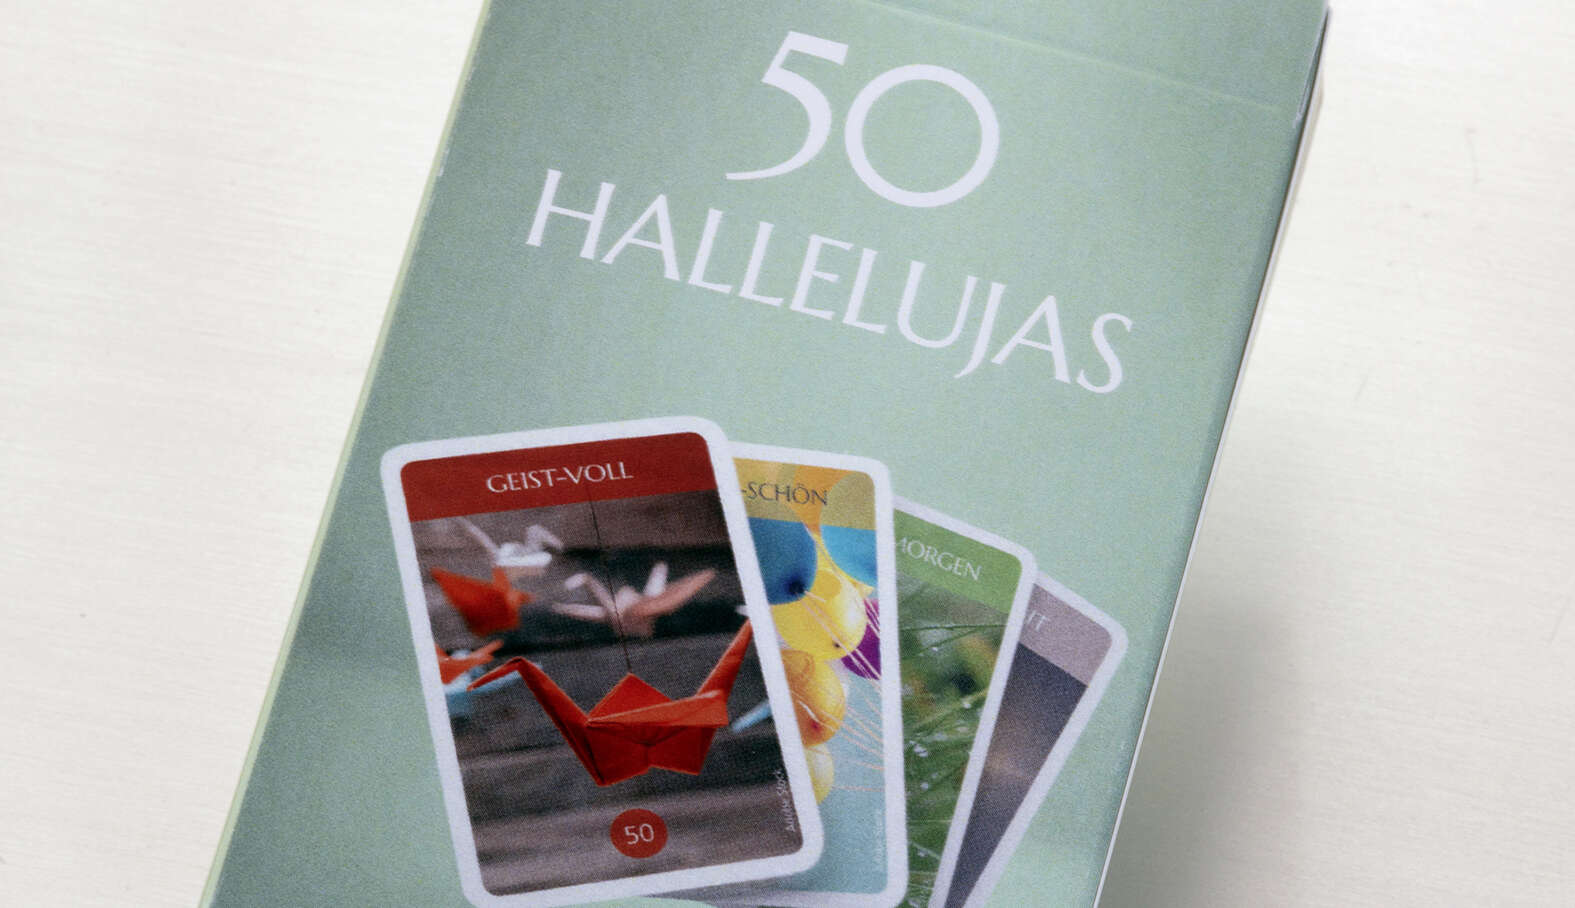 Katholisch Stadt Zürich verschenkt «50 Hallelujas»